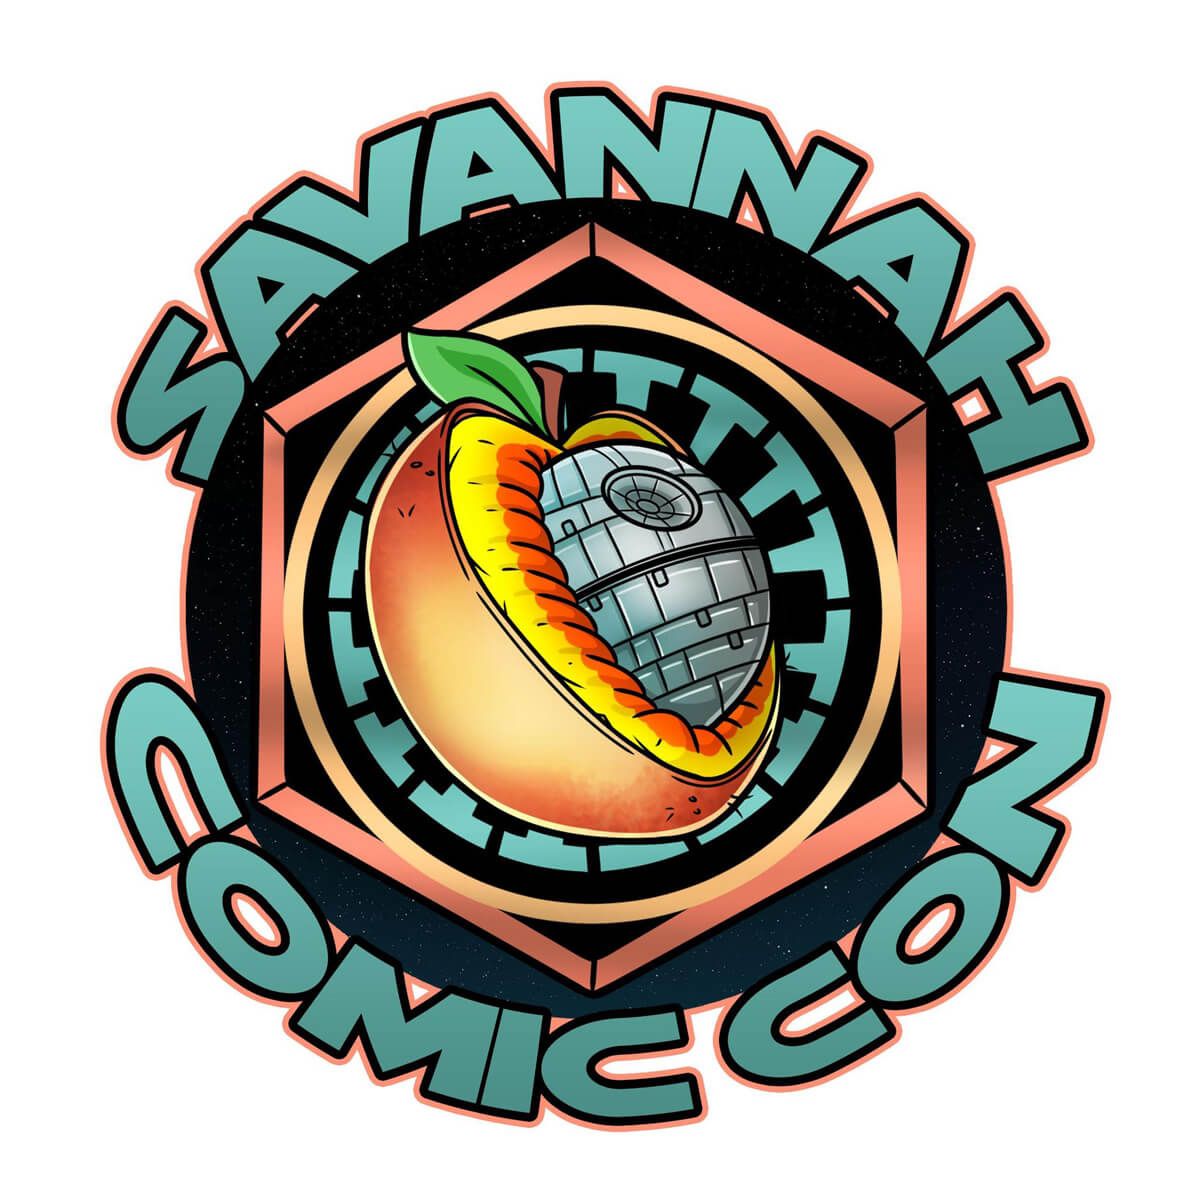 Savannah ComicCon